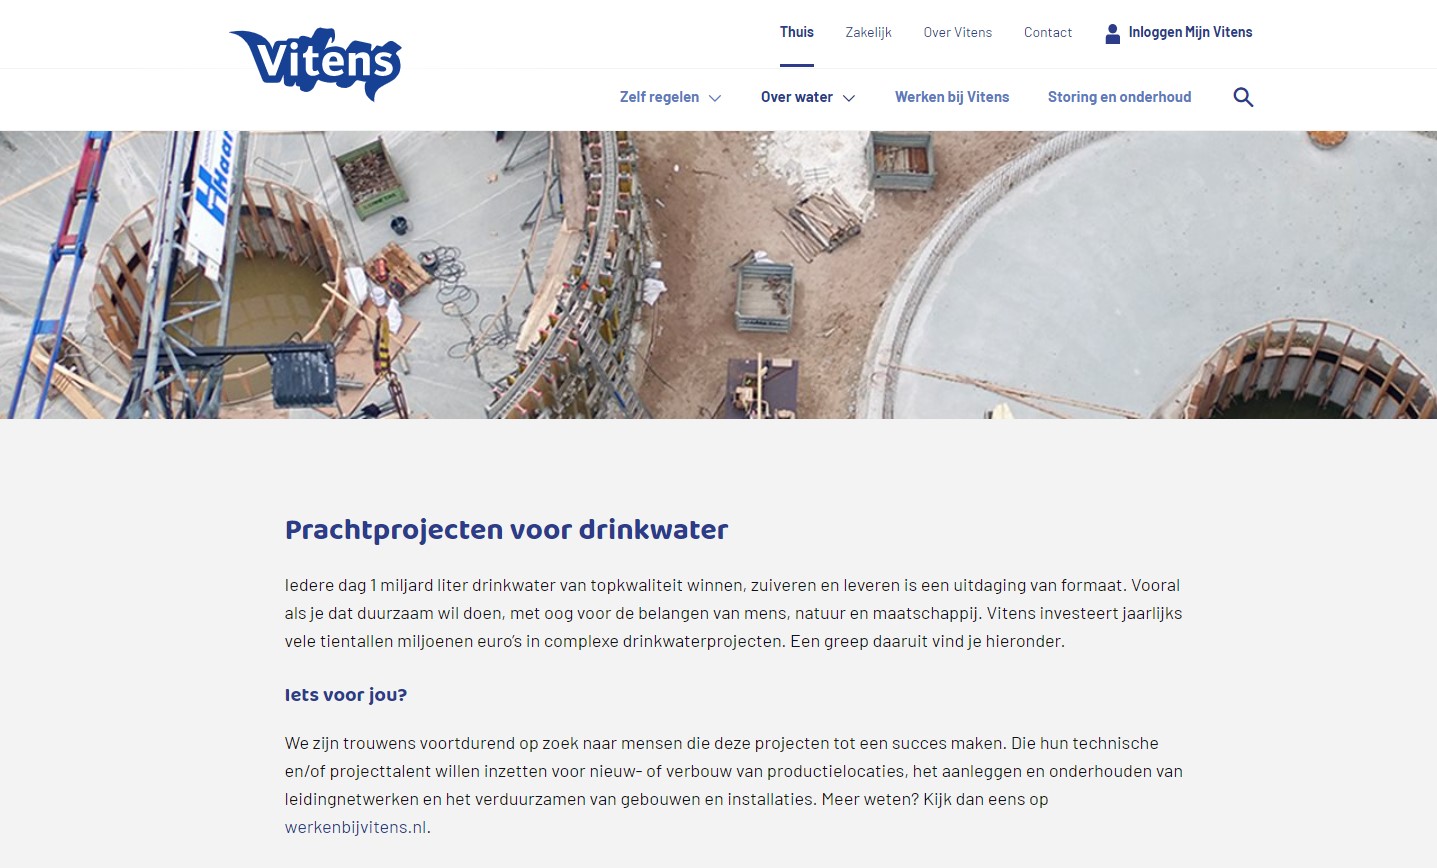 Prachtprojecten voor drinkwater